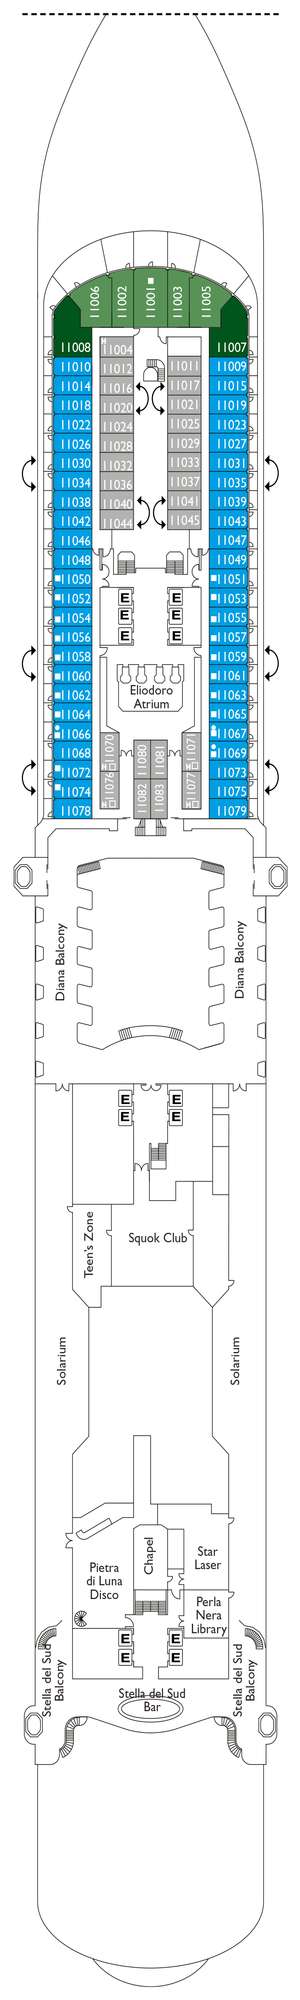 Deck plan for Costa Diadema